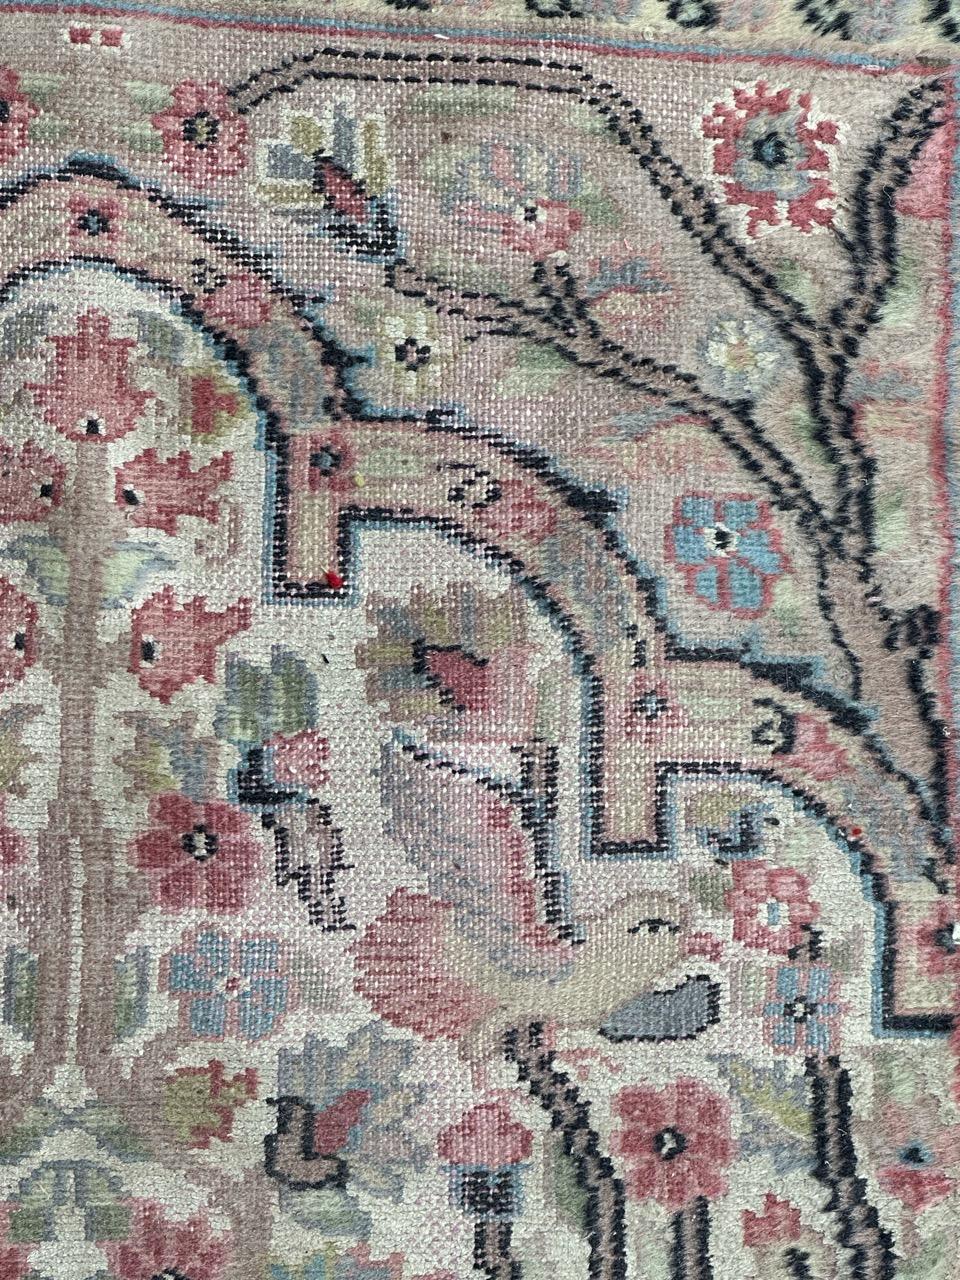 Schöner pakistanischer Teppich aus dem 20. Jahrhundert mit schönem Blumenmuster und schönen Farben mit weißem Feld, rosa, blau, orange und schwarz, vollständig und fein handgeknüpft mit Wolle und Seide auf Baumwollbasis. Kleidung und Uniform